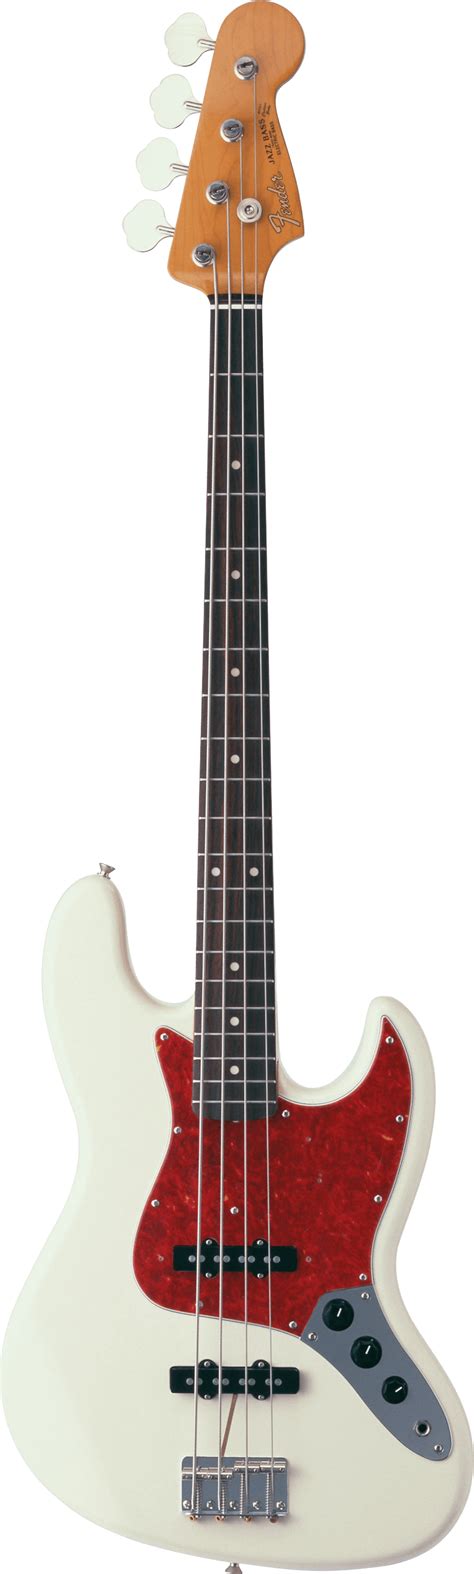 Fender Jazz Bass Guitar Transparent Png Stickpng